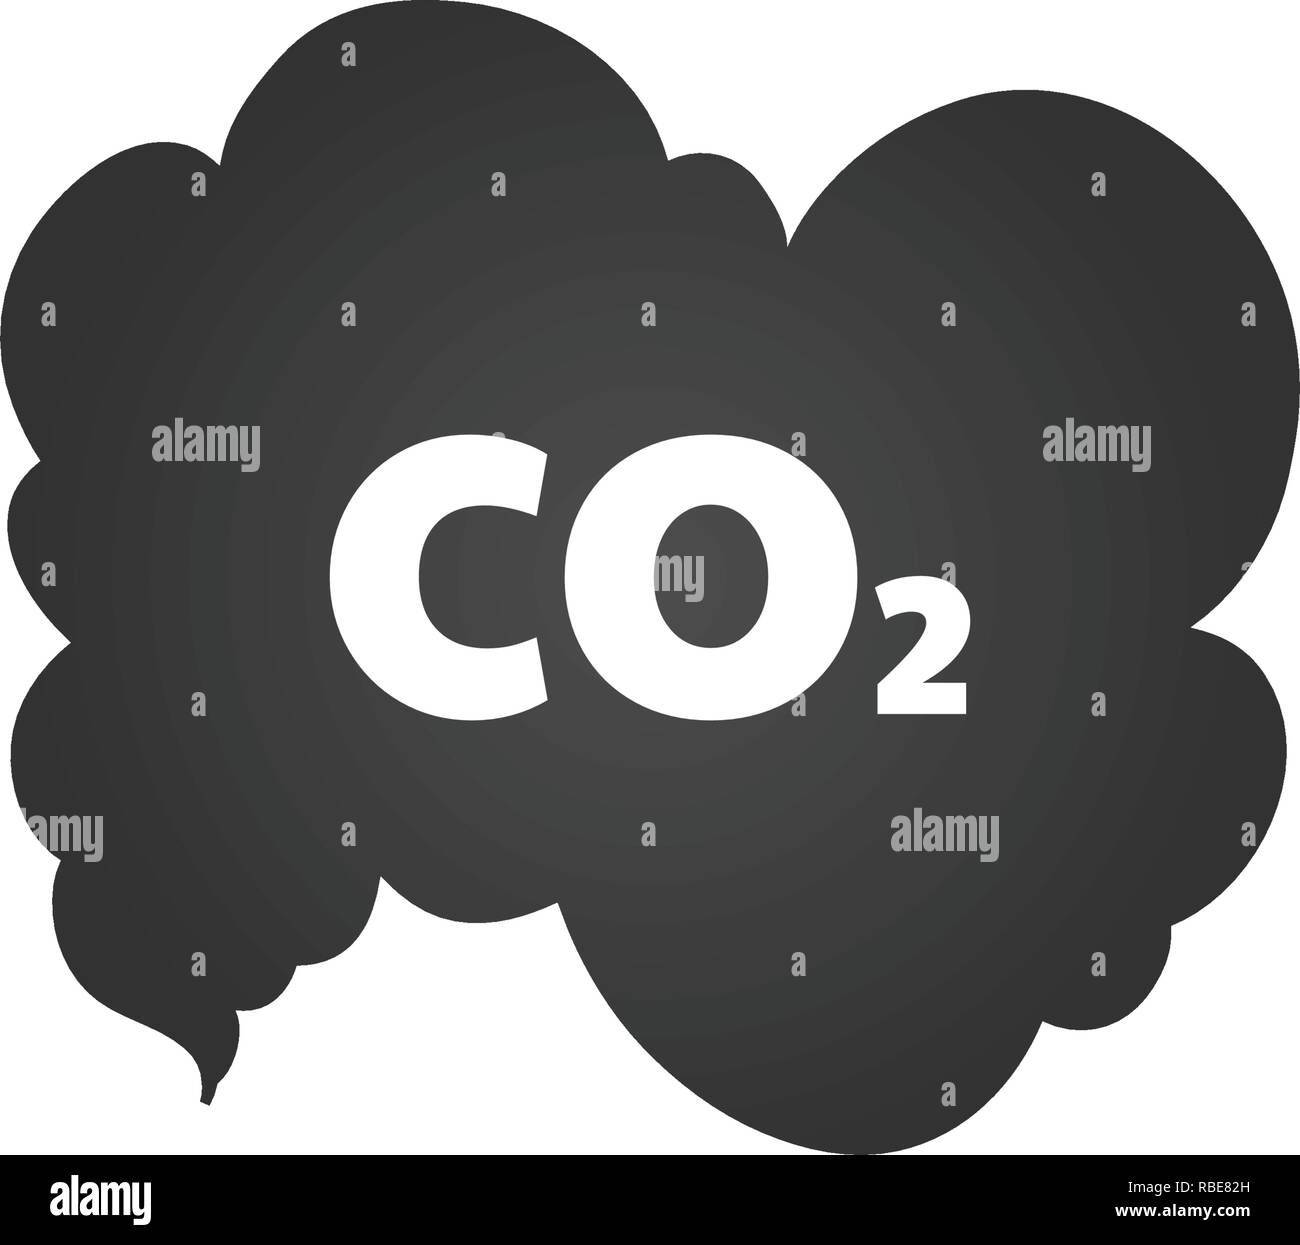 Co2-Emissionen Symbol cloud Vektor flach, Kohlendioxid emittiert Symbol, smog Luftverschmutzung Konzept, Rauch Schadstoff Schäden Stock Vektor